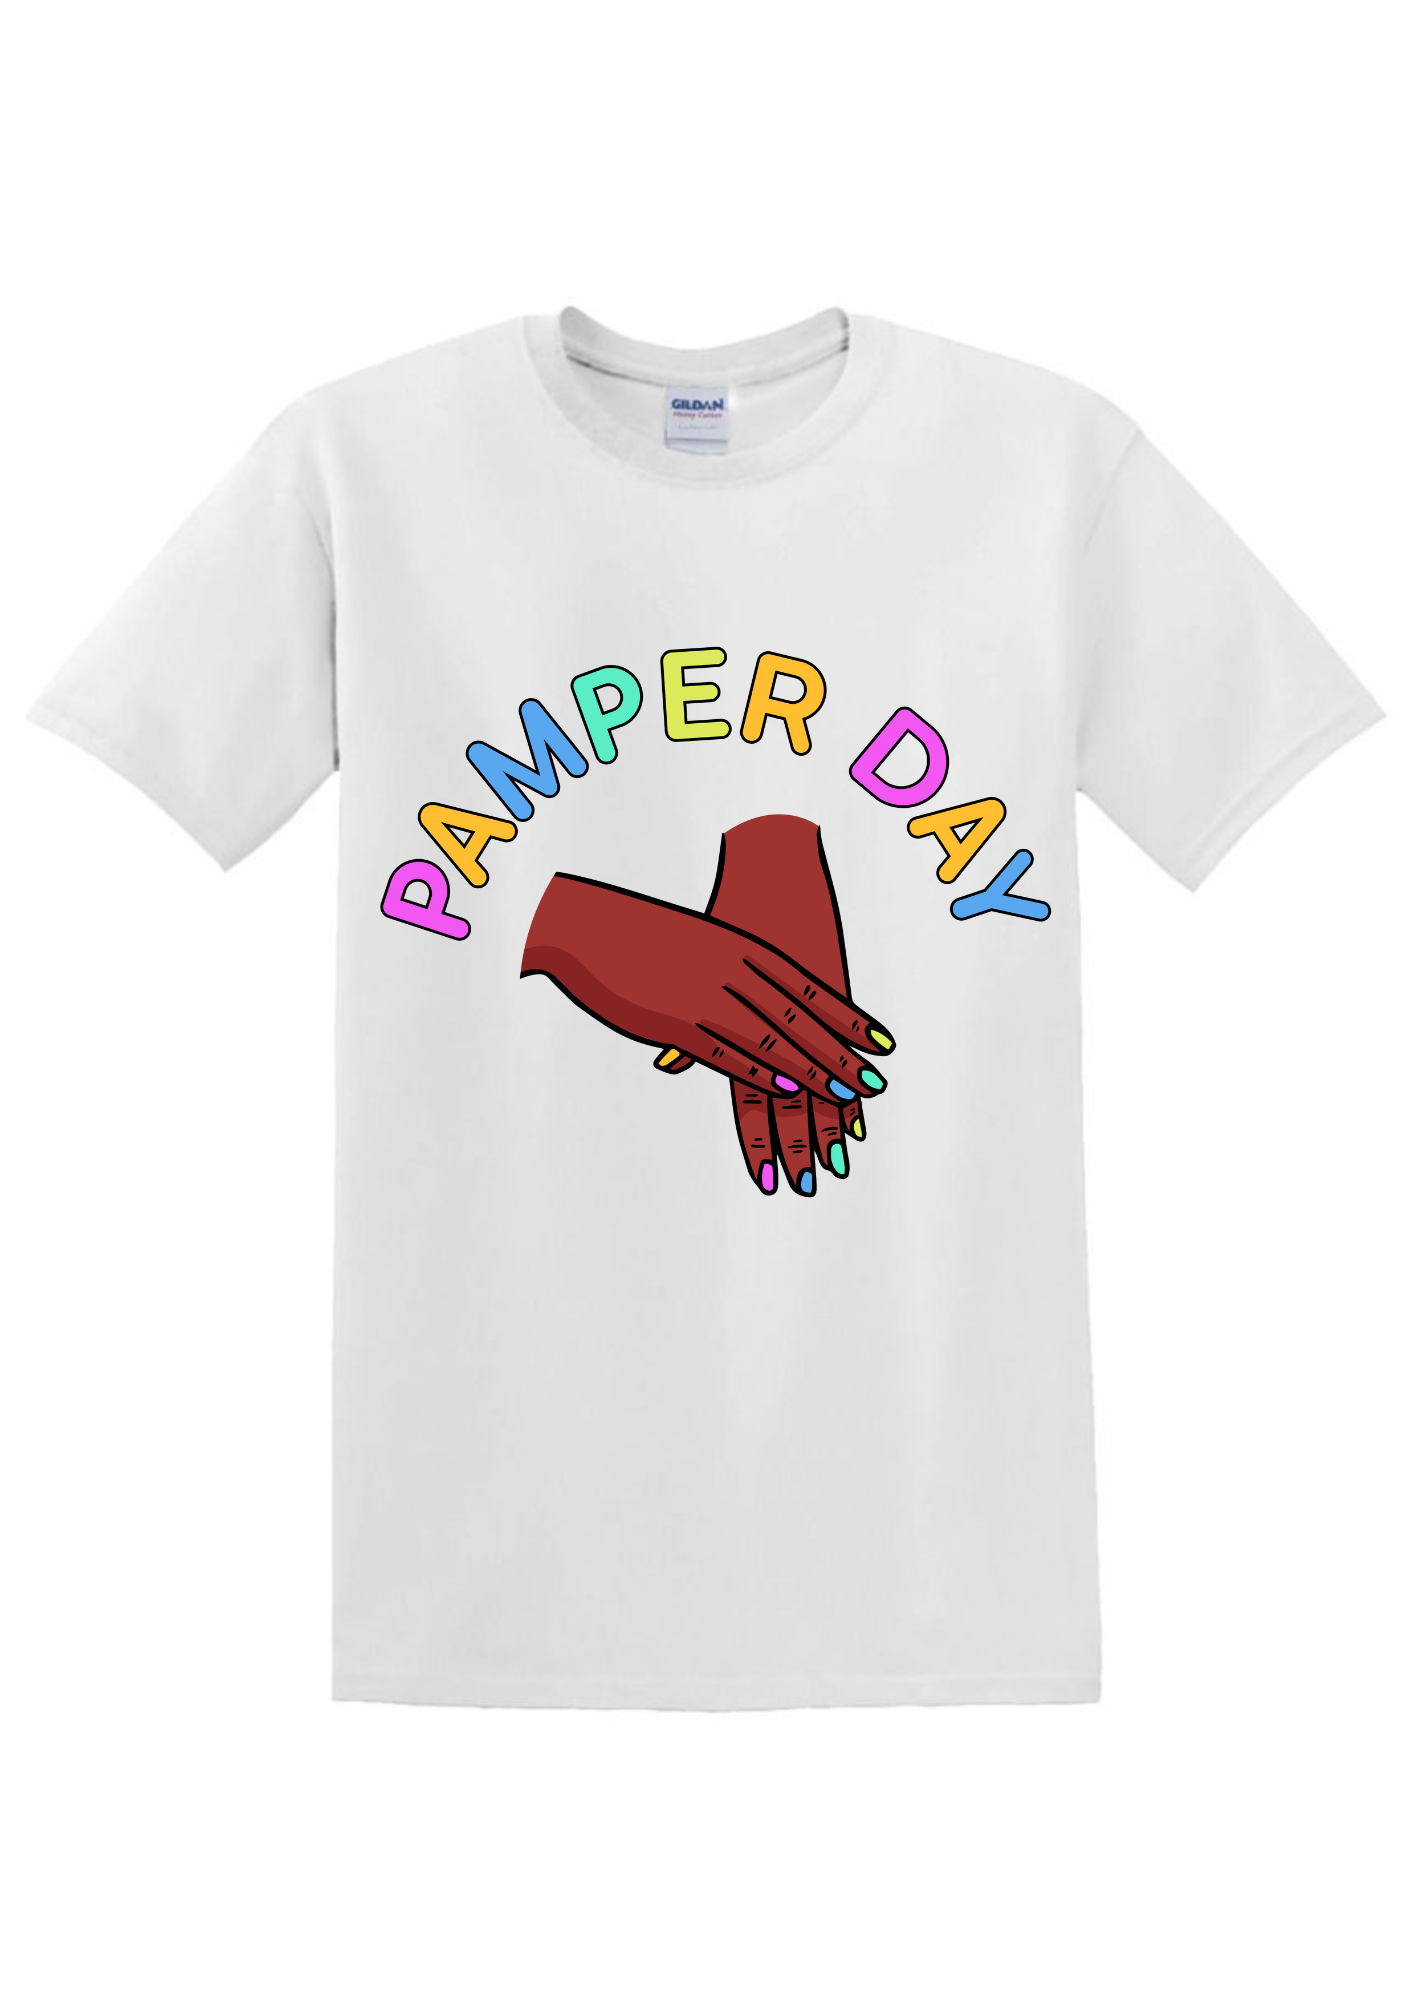 Pamper Day Women's T-shirt